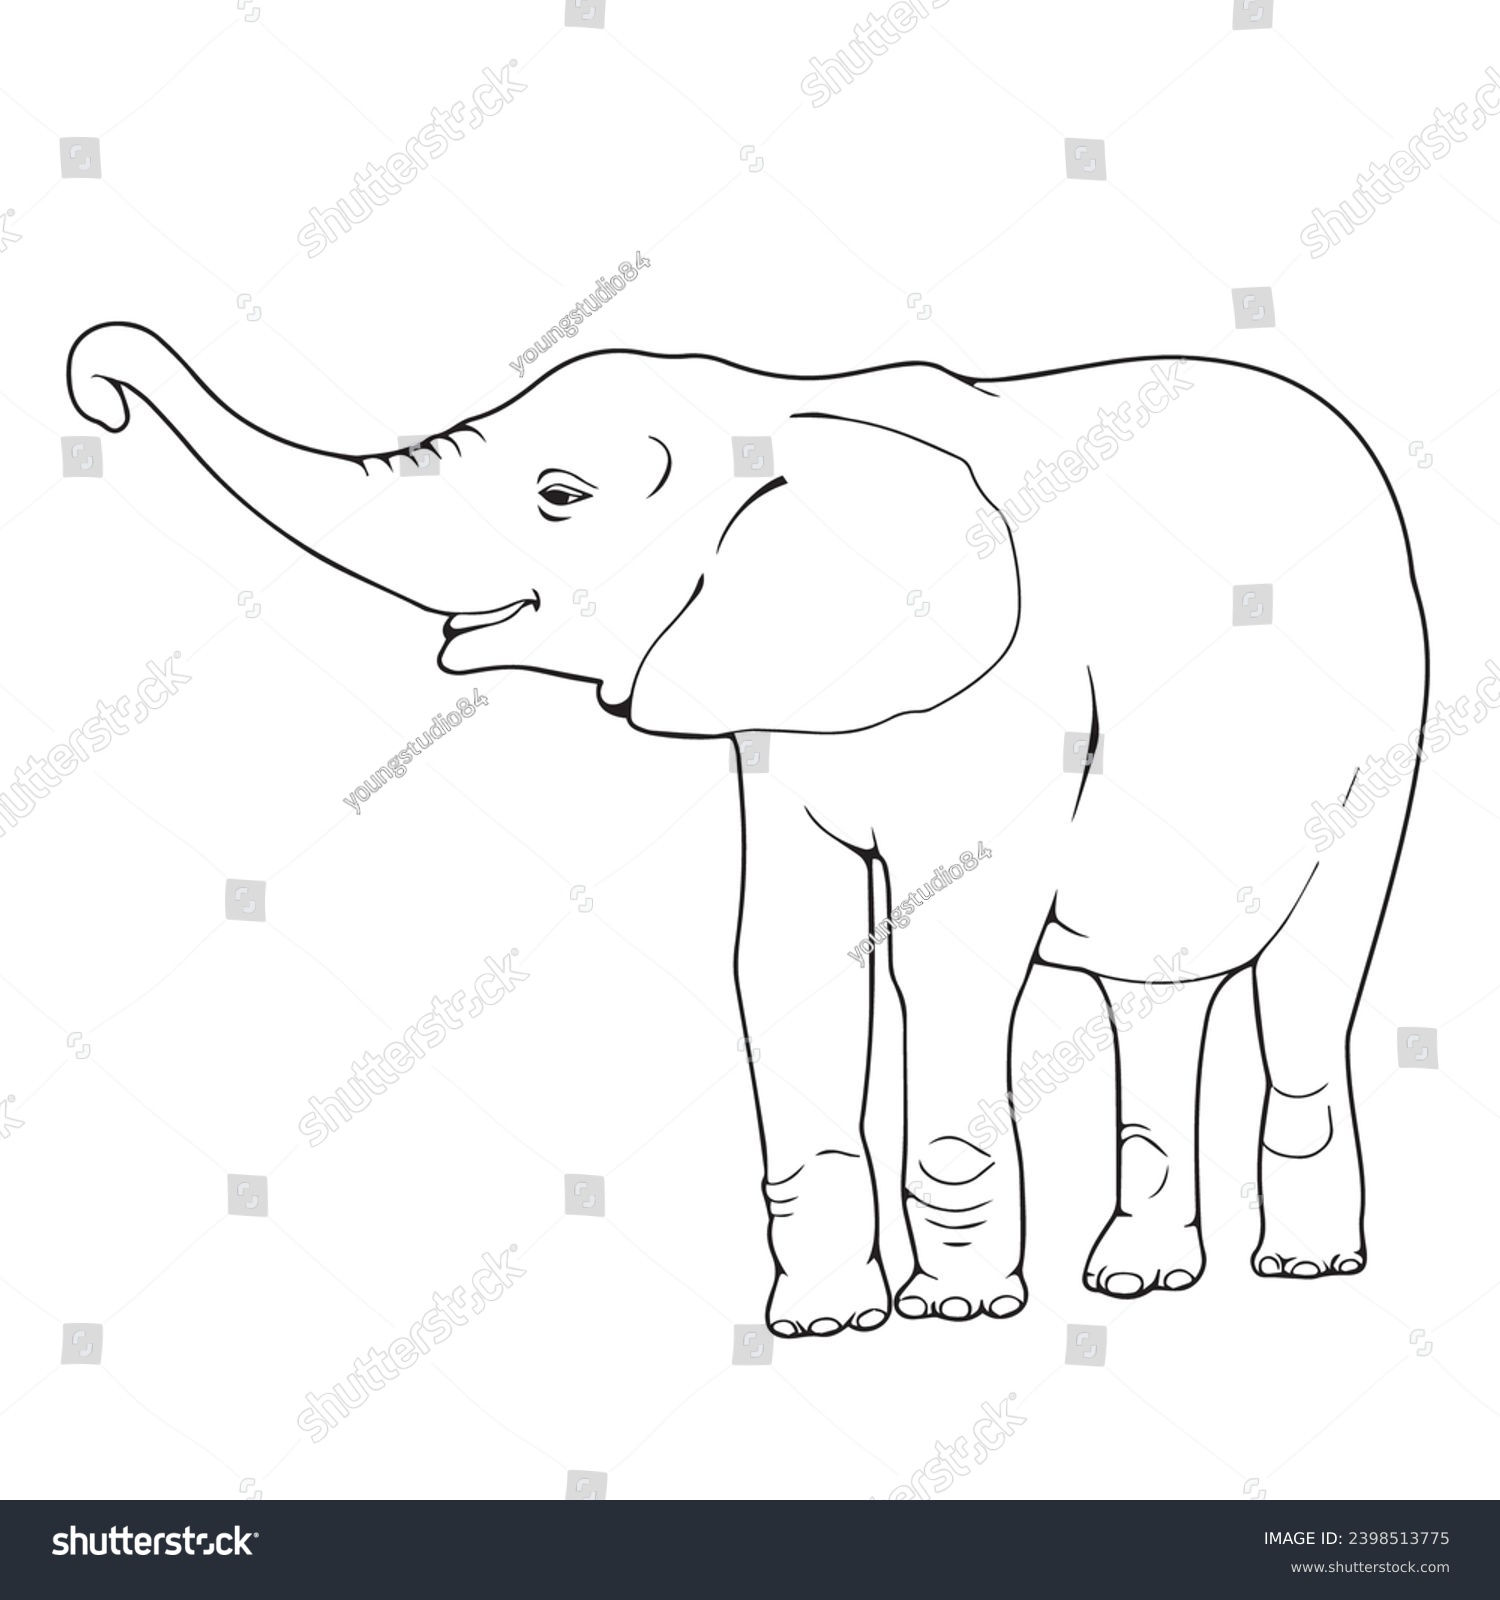 SVG of children's sketch illustration of a elephant svg